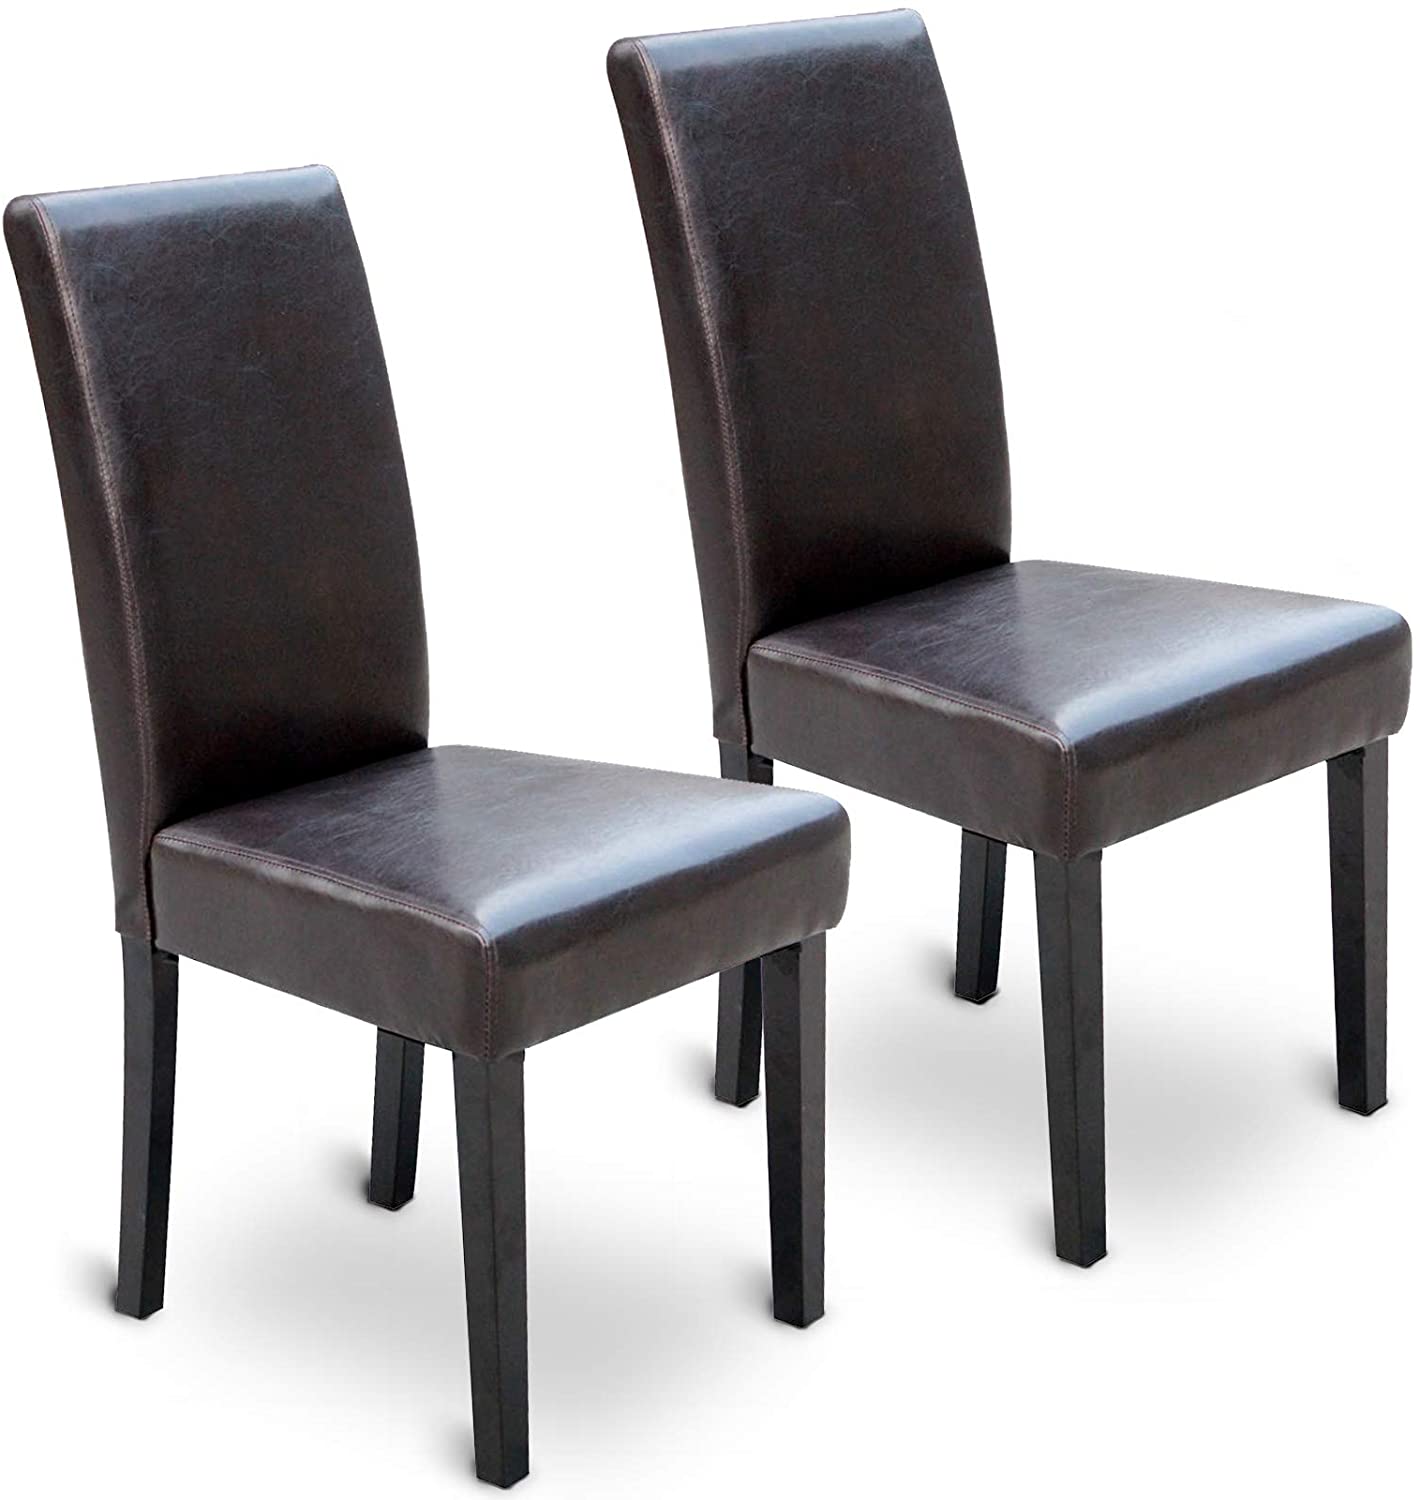 Eetkamerstoelen – Lounge stoelen – Retro – Vintage – Gestoffeerd – Set van 2 – Bruin